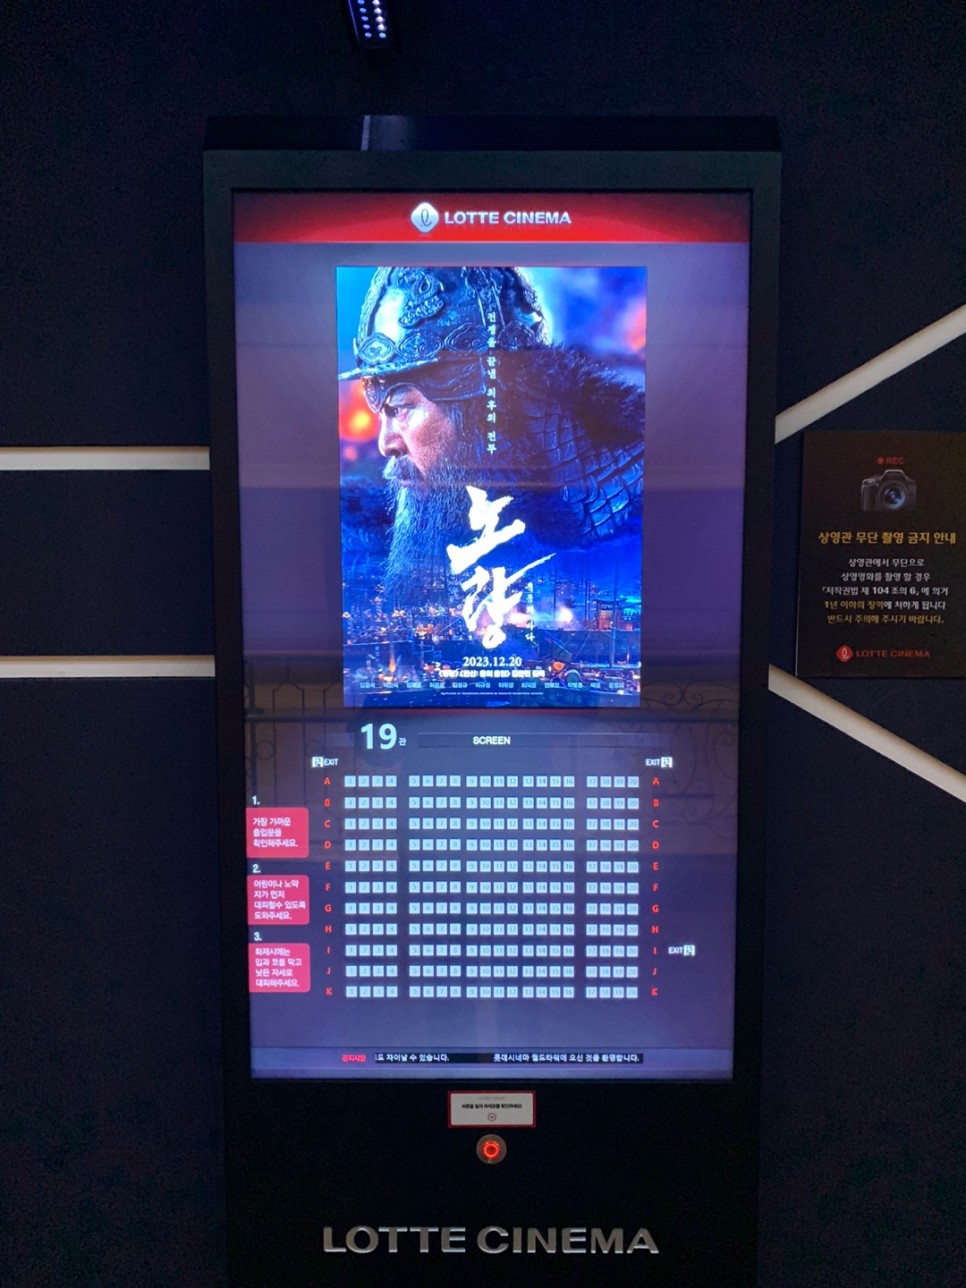 영화 노량: 죽음의 바다 후기 - 롯데시네마 월드타워관 SUPER l MX4D에서 느끼는 노량해전